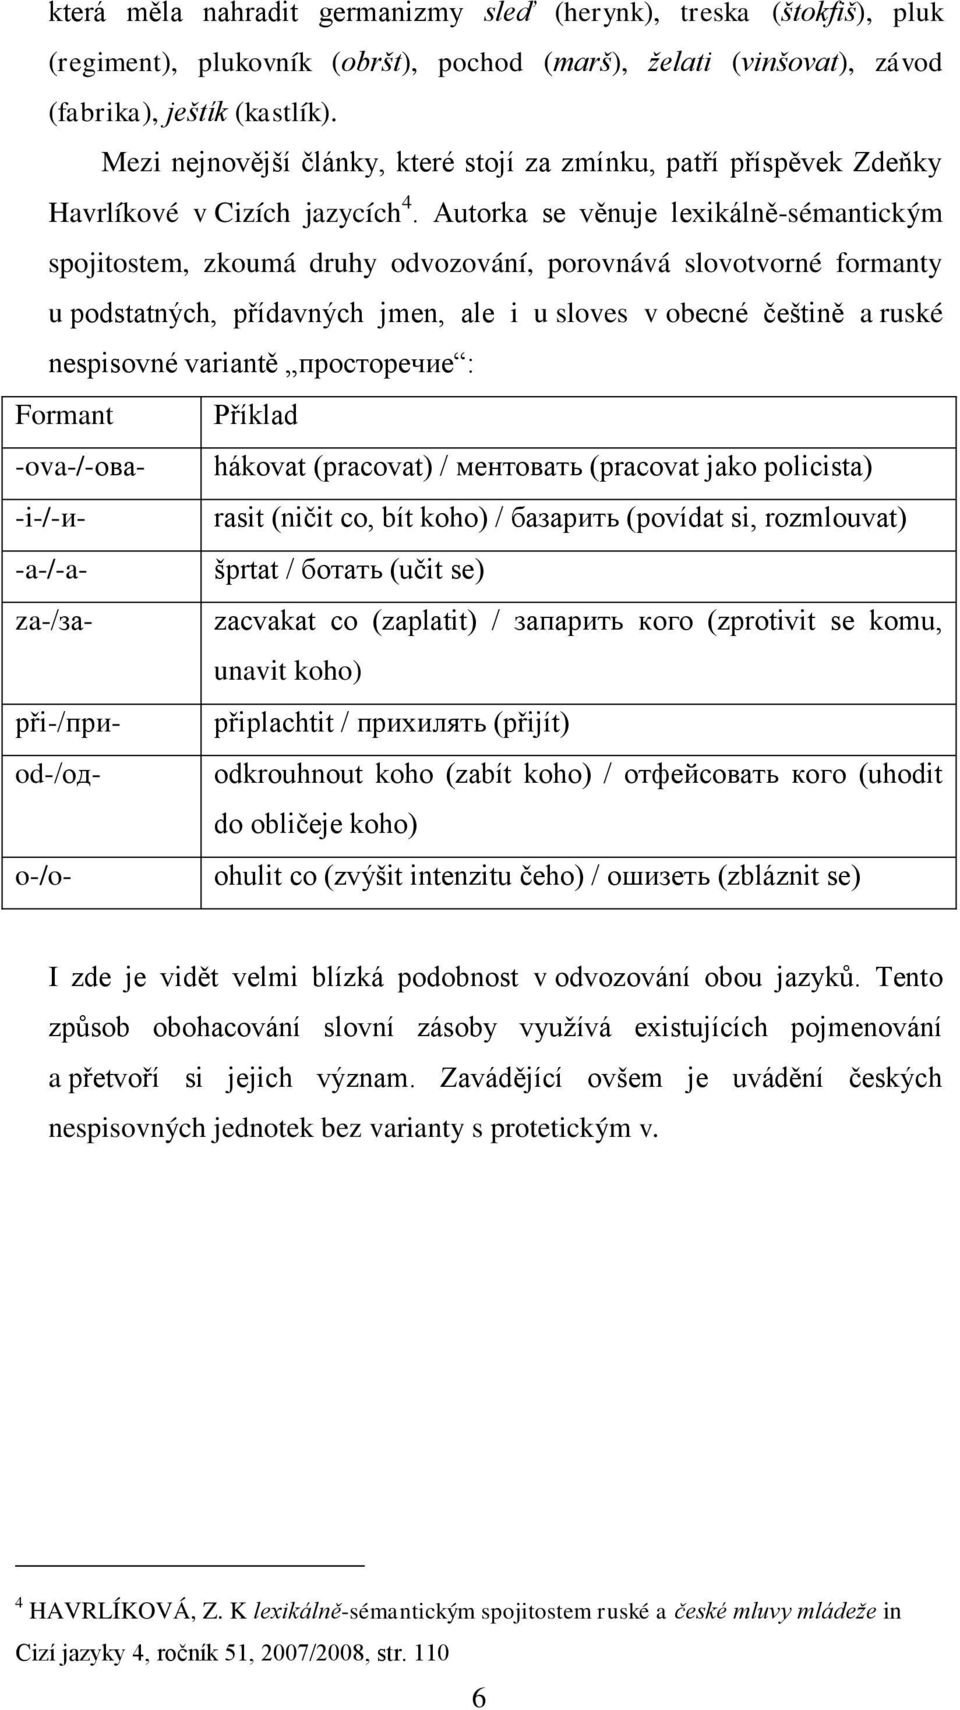 Autorka se věnuje lexikálně-sémantickým spojitostem, zkoumá druhy odvozování, porovnává slovotvorné formanty u podstatných, přídavných jmen, ale i u sloves v obecné češtině a ruské nespisovné